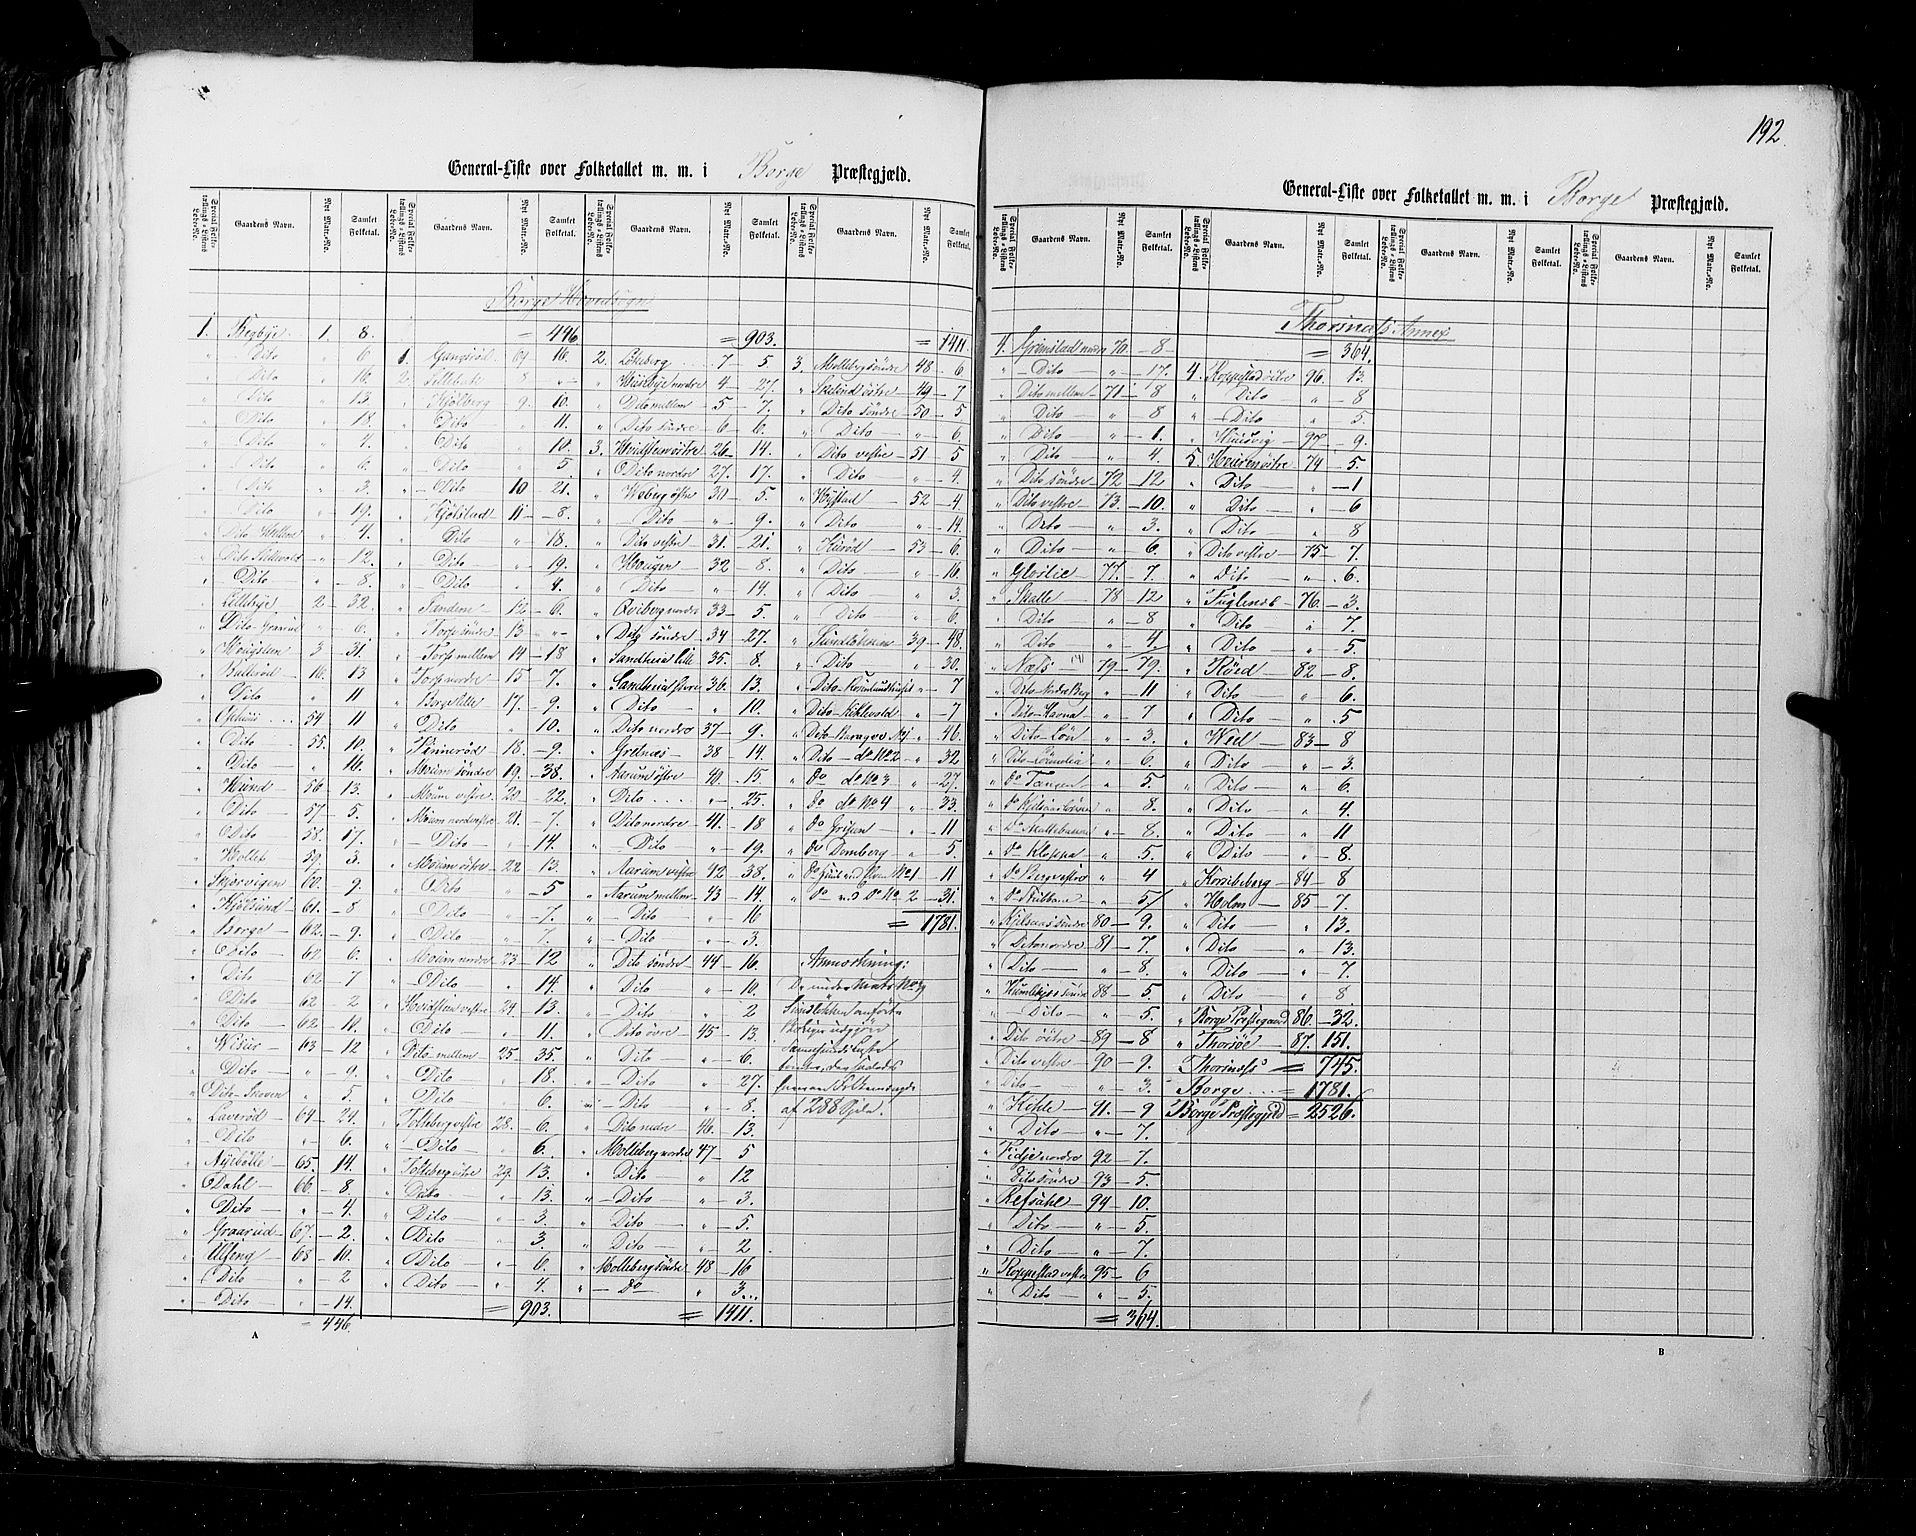 RA, Census 1855, vol. 1: Akershus amt, Smålenenes amt og Hedemarken amt, 1855, p. 192